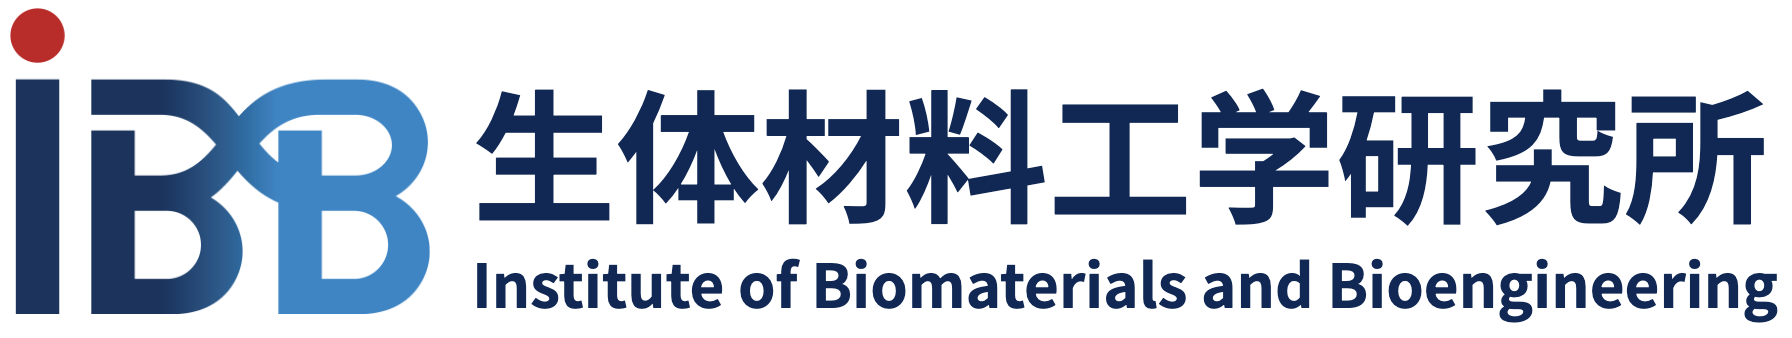 Institute of Biomaterials and Bioengineering